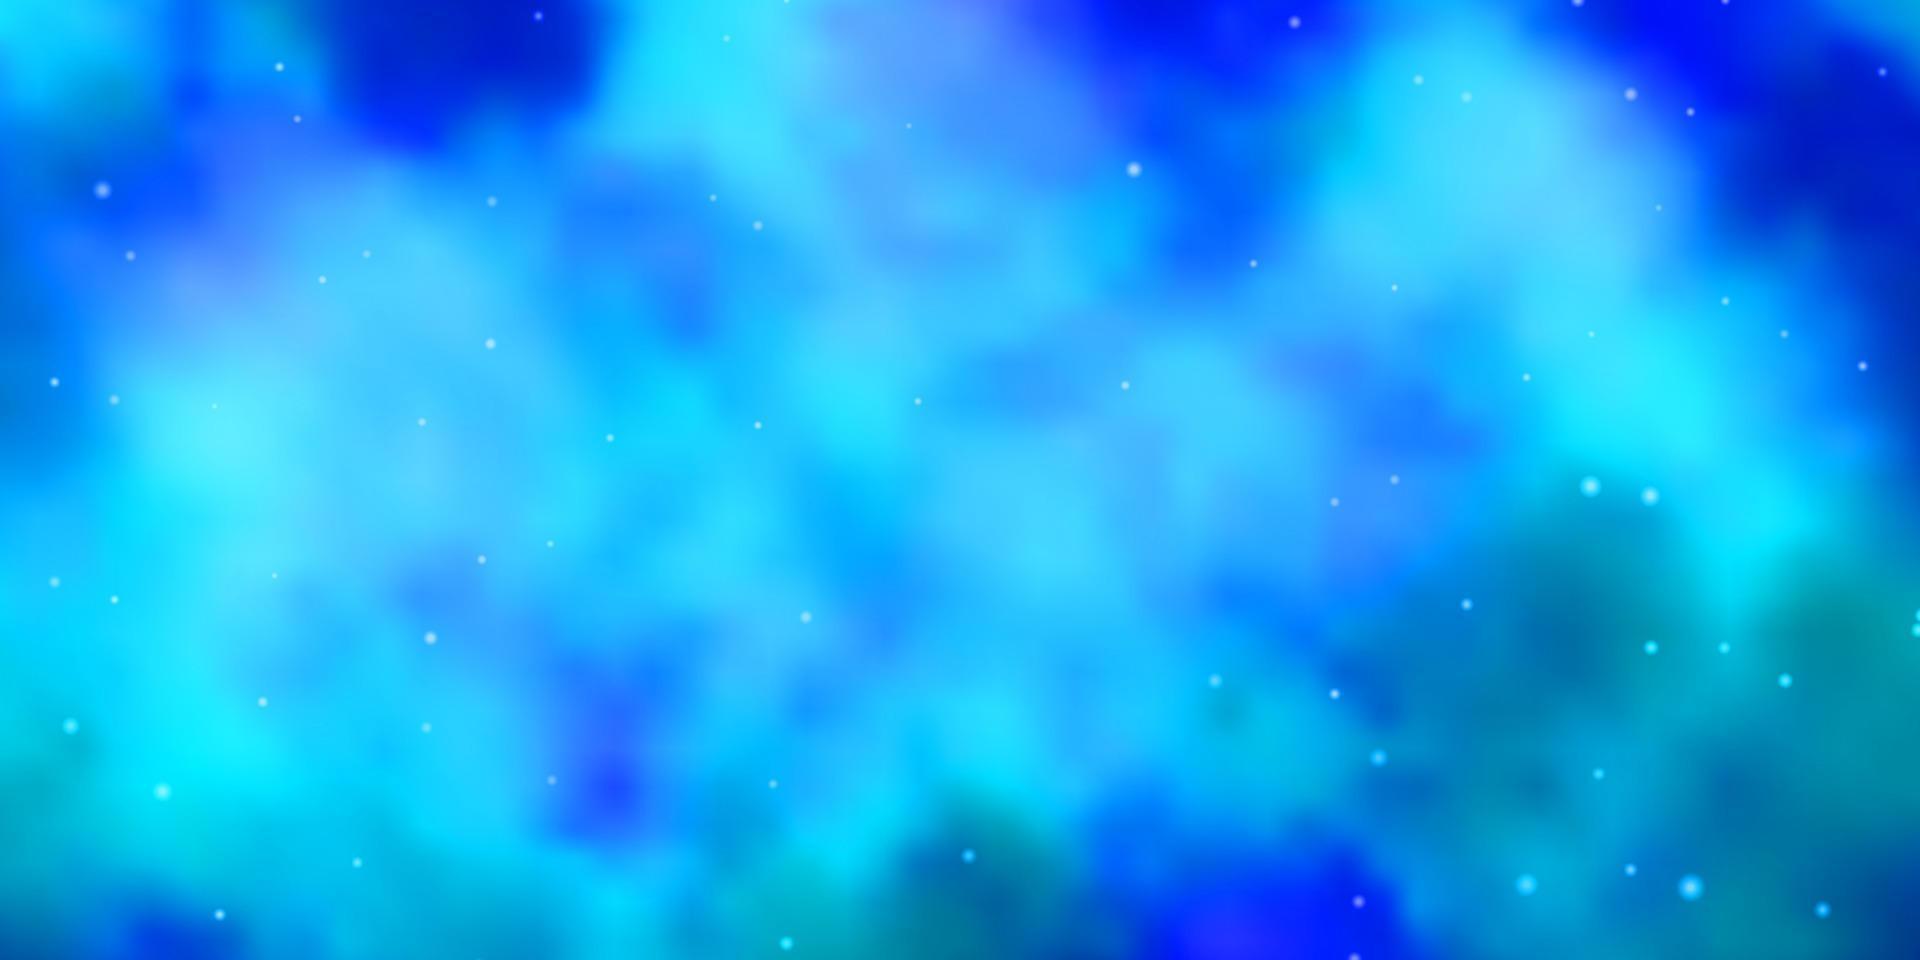 padrão de vetor azul claro com estrelas abstratas.